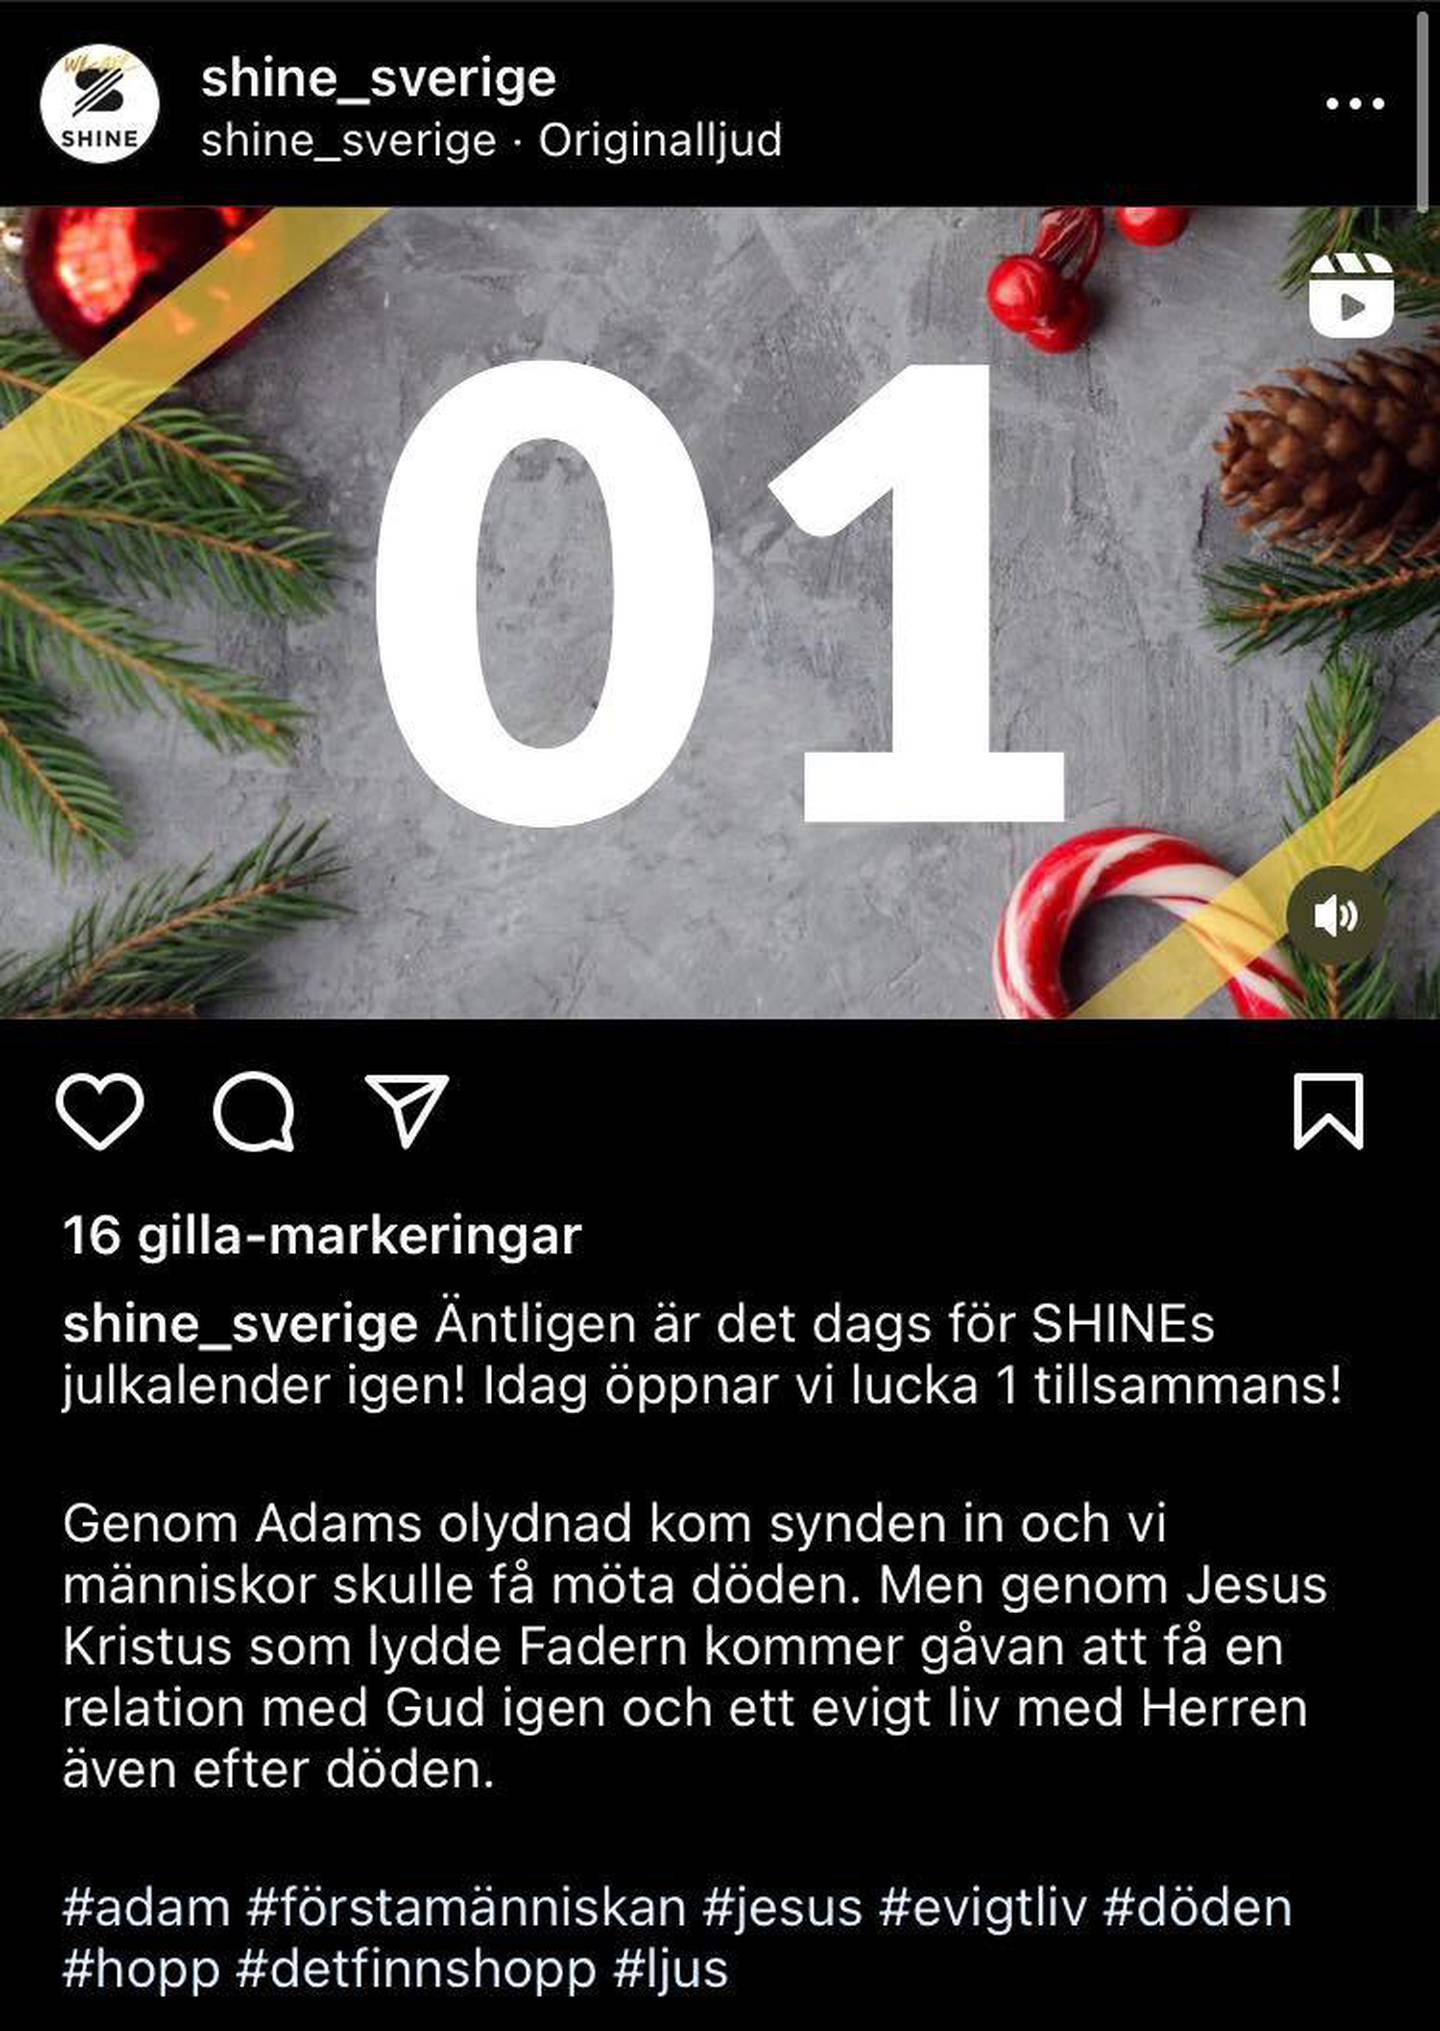 Shine Sverige uppmuntrar sina följare med bibelord.